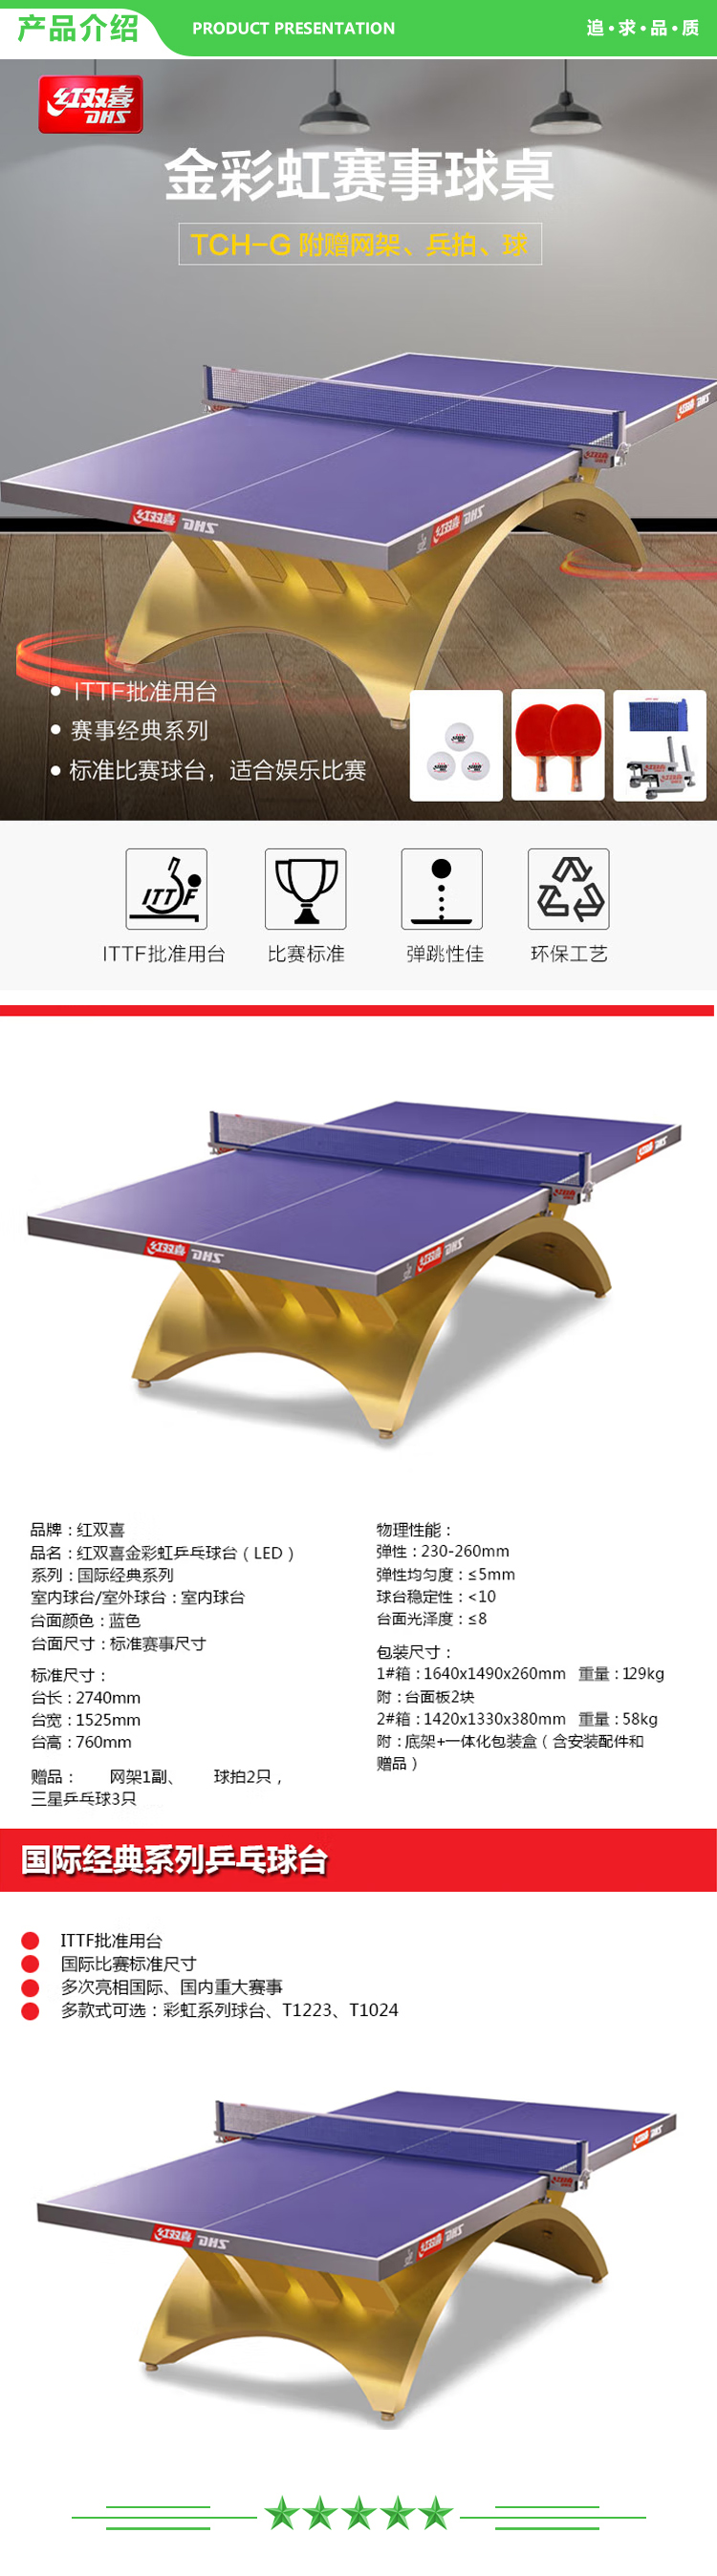 红双喜 DHS DXBG186-1 金彩虹乒乓球桌室内乒乓球台训练比赛用乒乓球案子 .jpg